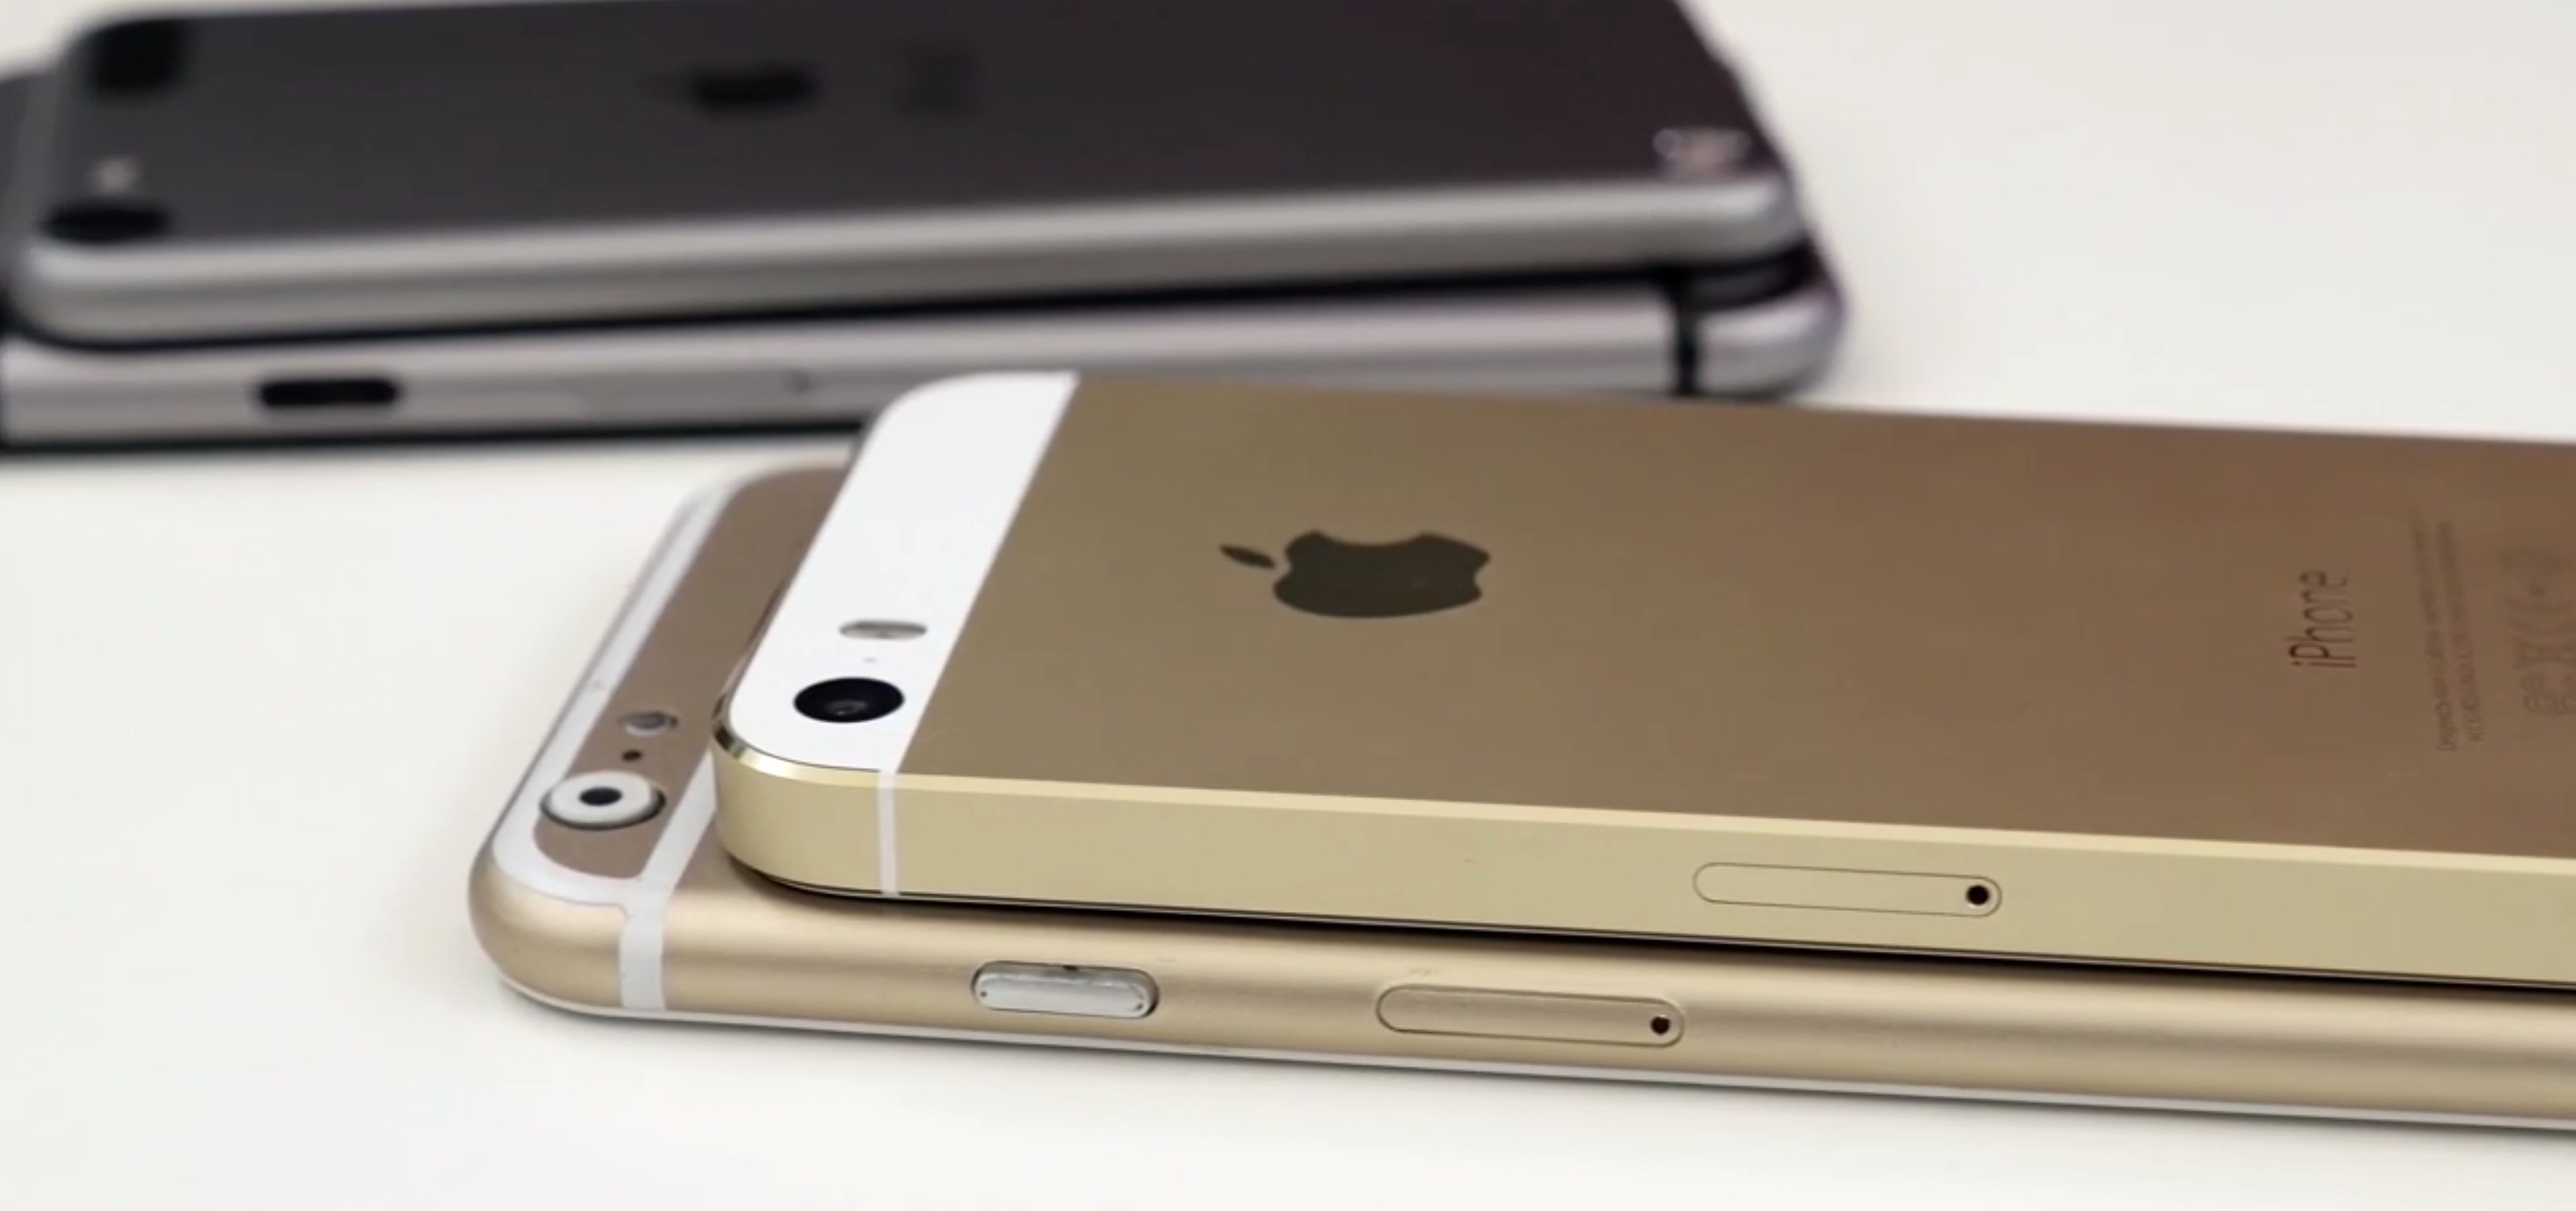 Foxconn startet iPhone 6 Produktion im Juli 2